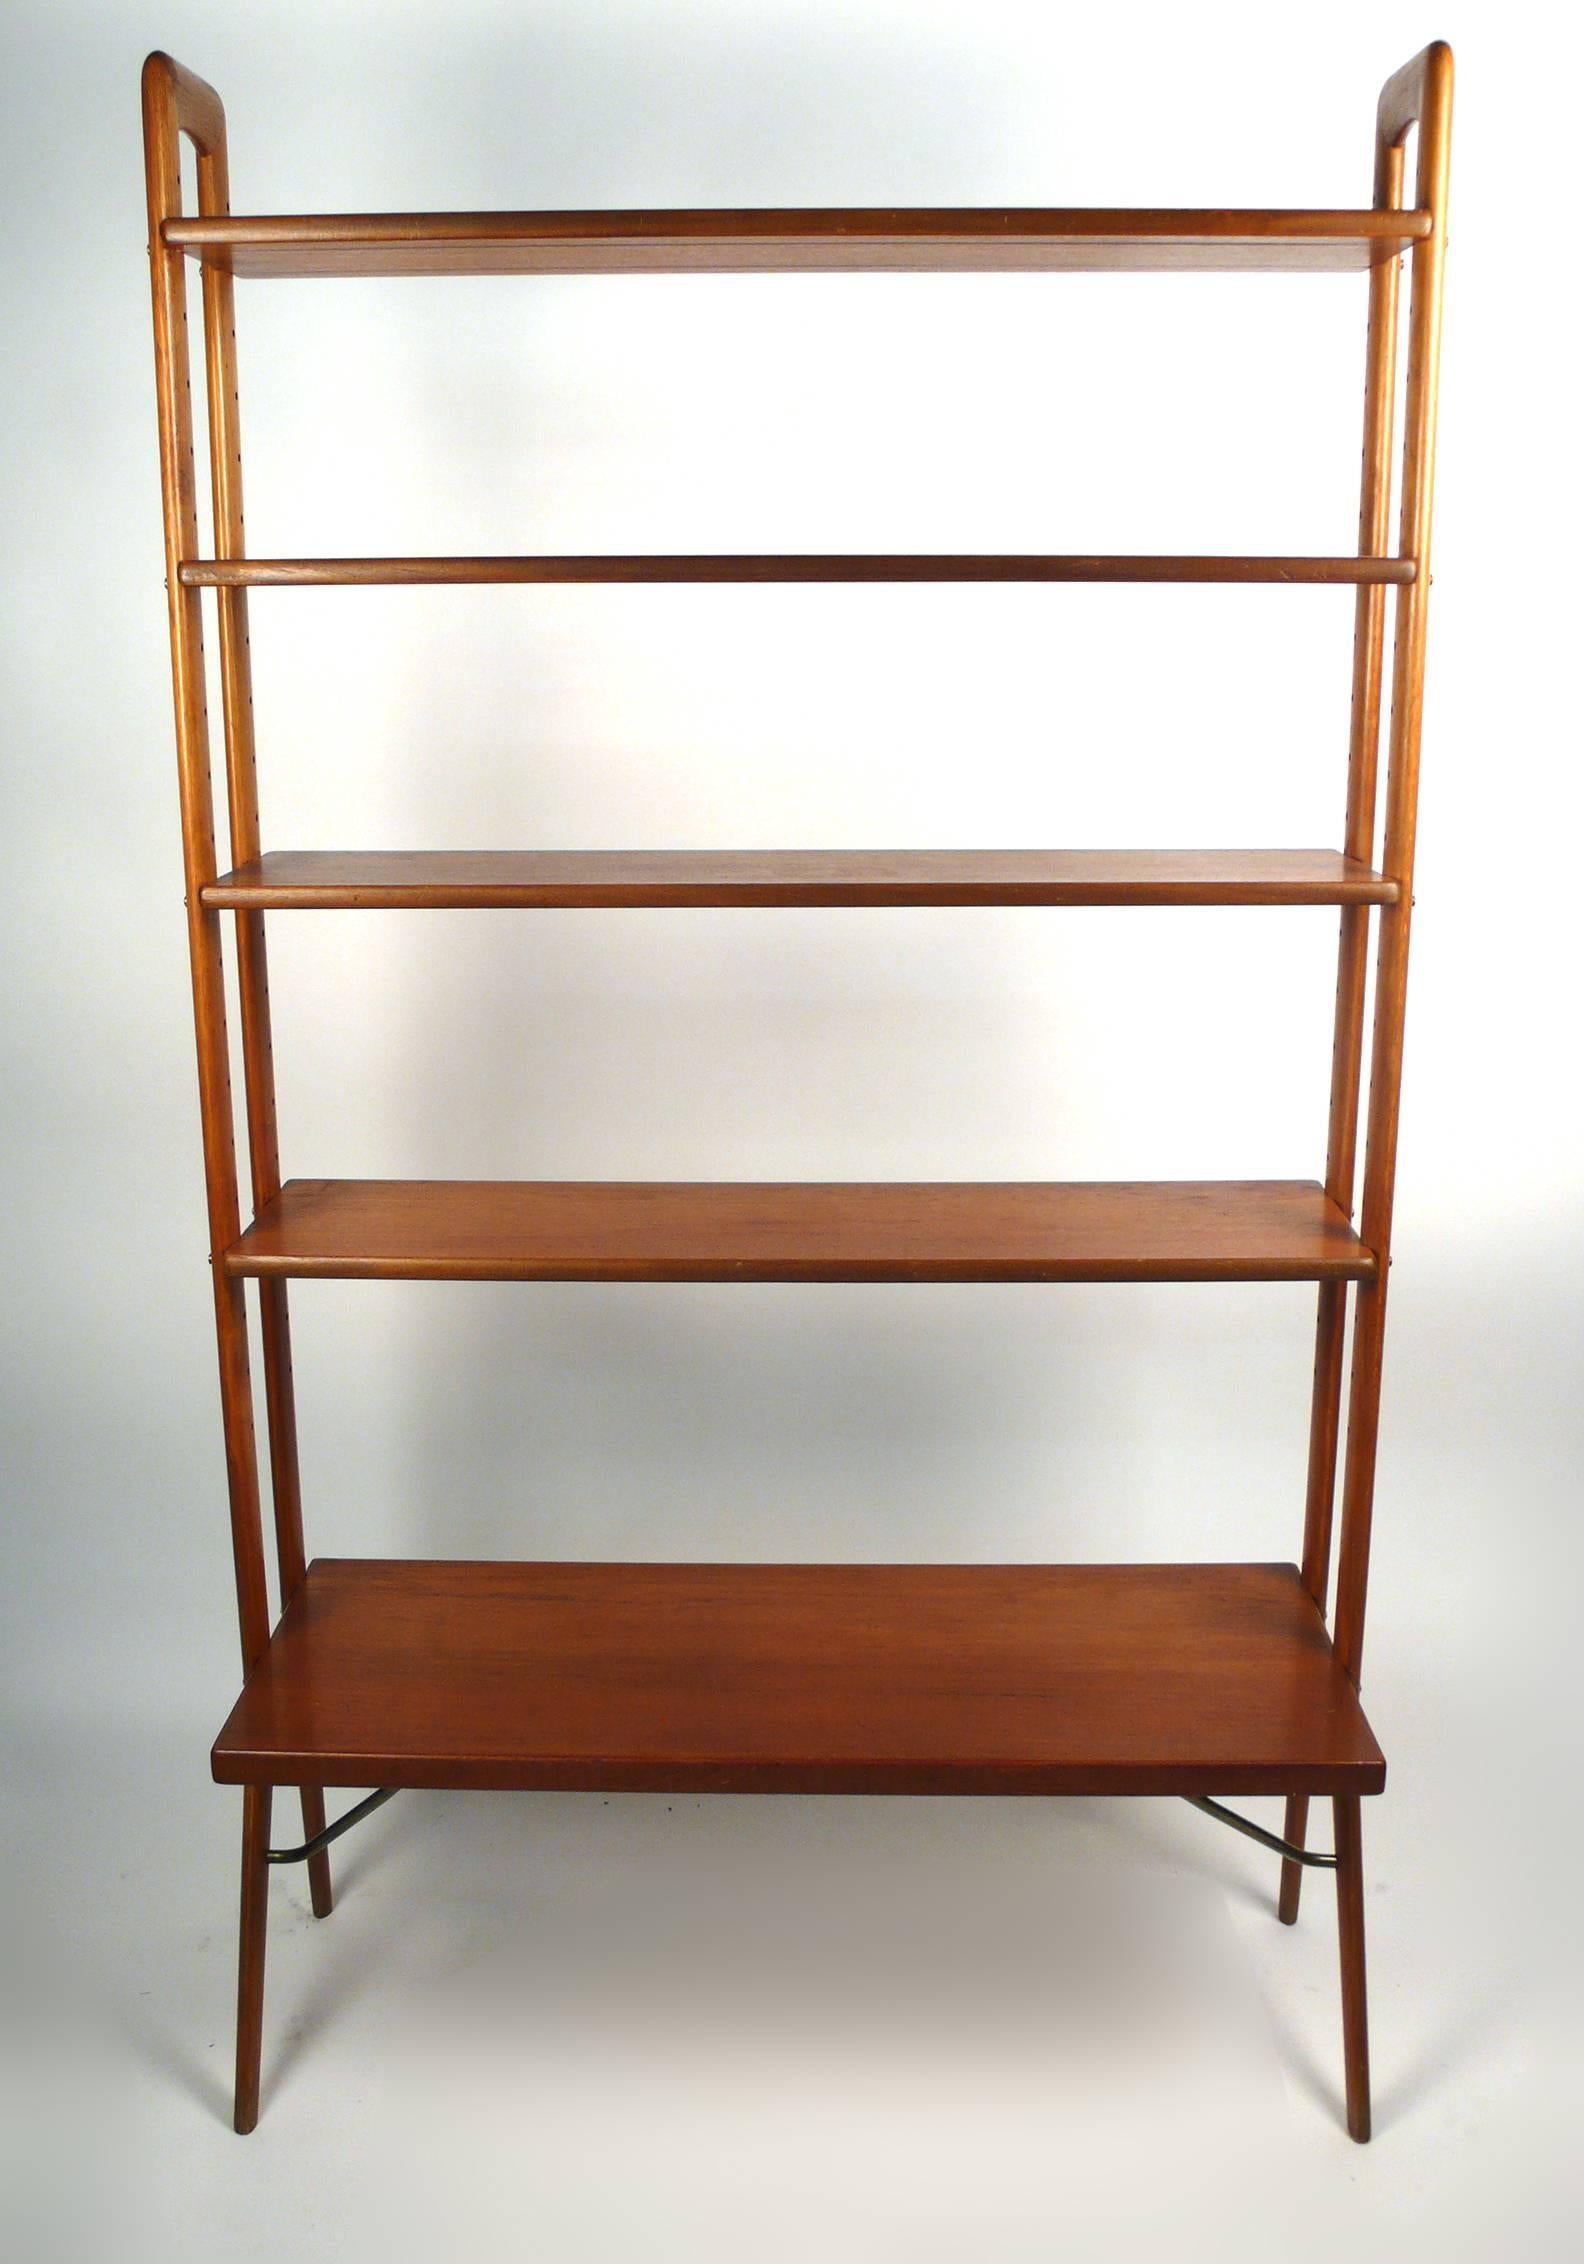 Freestanding Danish modern bookshelf designed by Kurt Ostervig. Adjustable teak shelves and solid oak uprights.